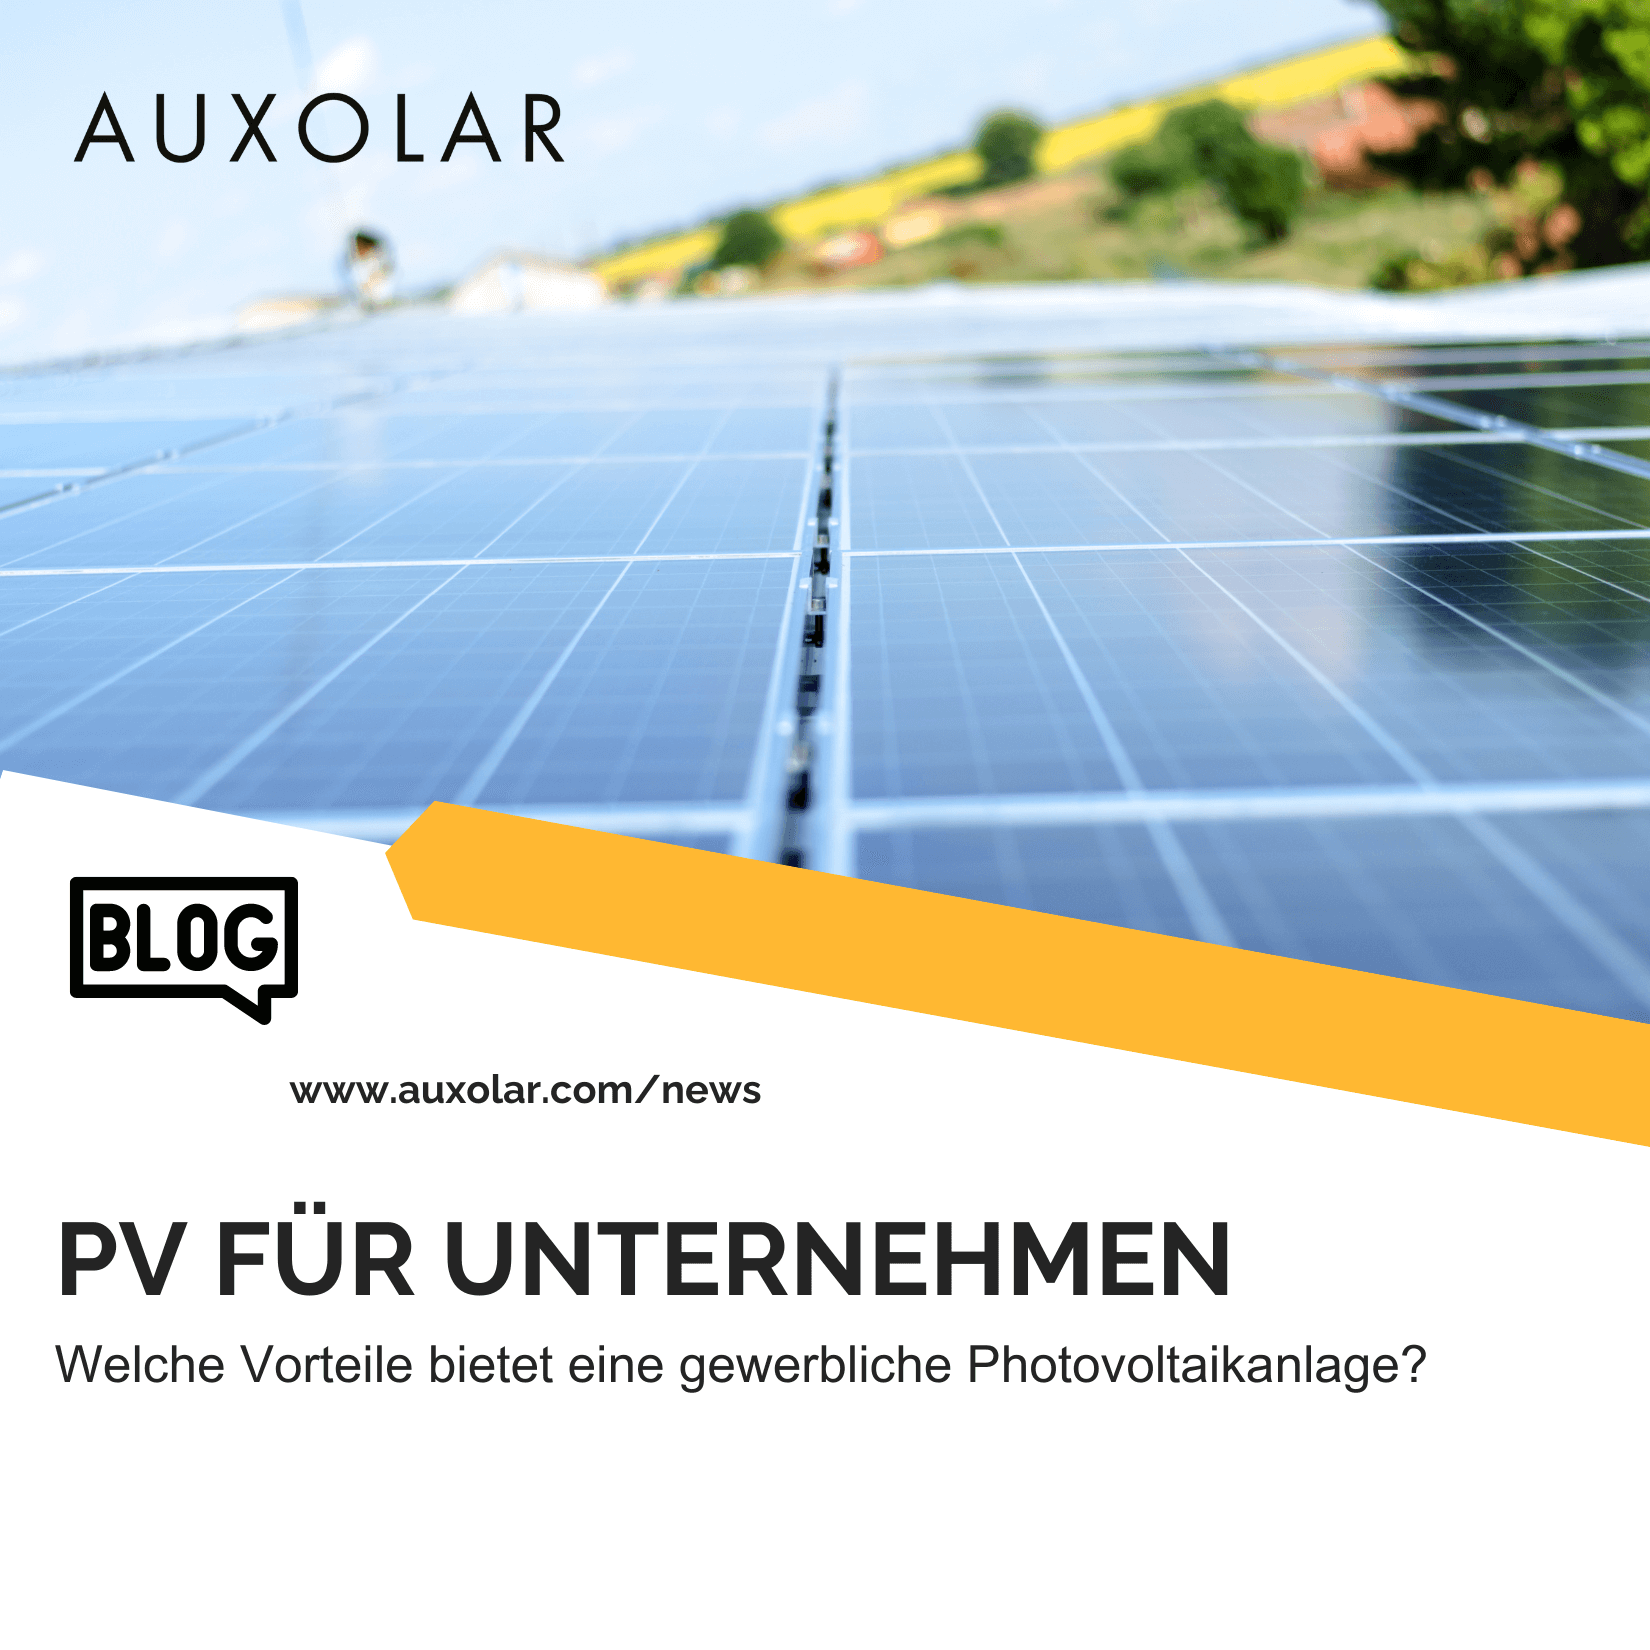 Mehr über den Artikel erfahren Welche Vorteile liefert eine Photovoltaikanlage für Unternehmen?